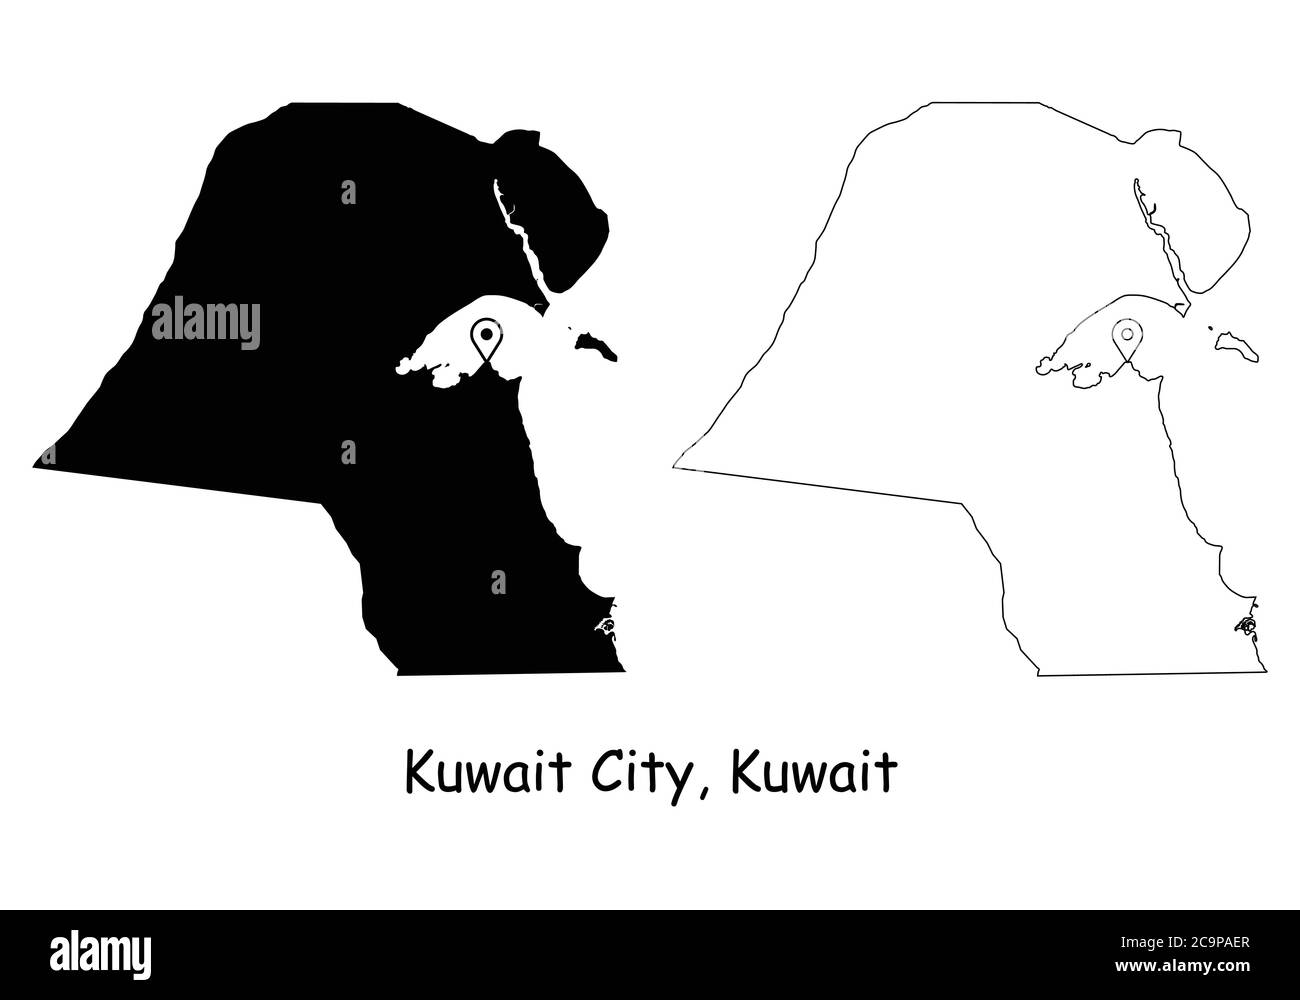 Kuwait-Stadt Kuwait. Detaillierte Landkarte mit Lage Pin auf Hauptstadt. Schwarze Silhouette und Umrisskarten isoliert auf weißem Hintergrund. EPS-Vektor Stock Vektor